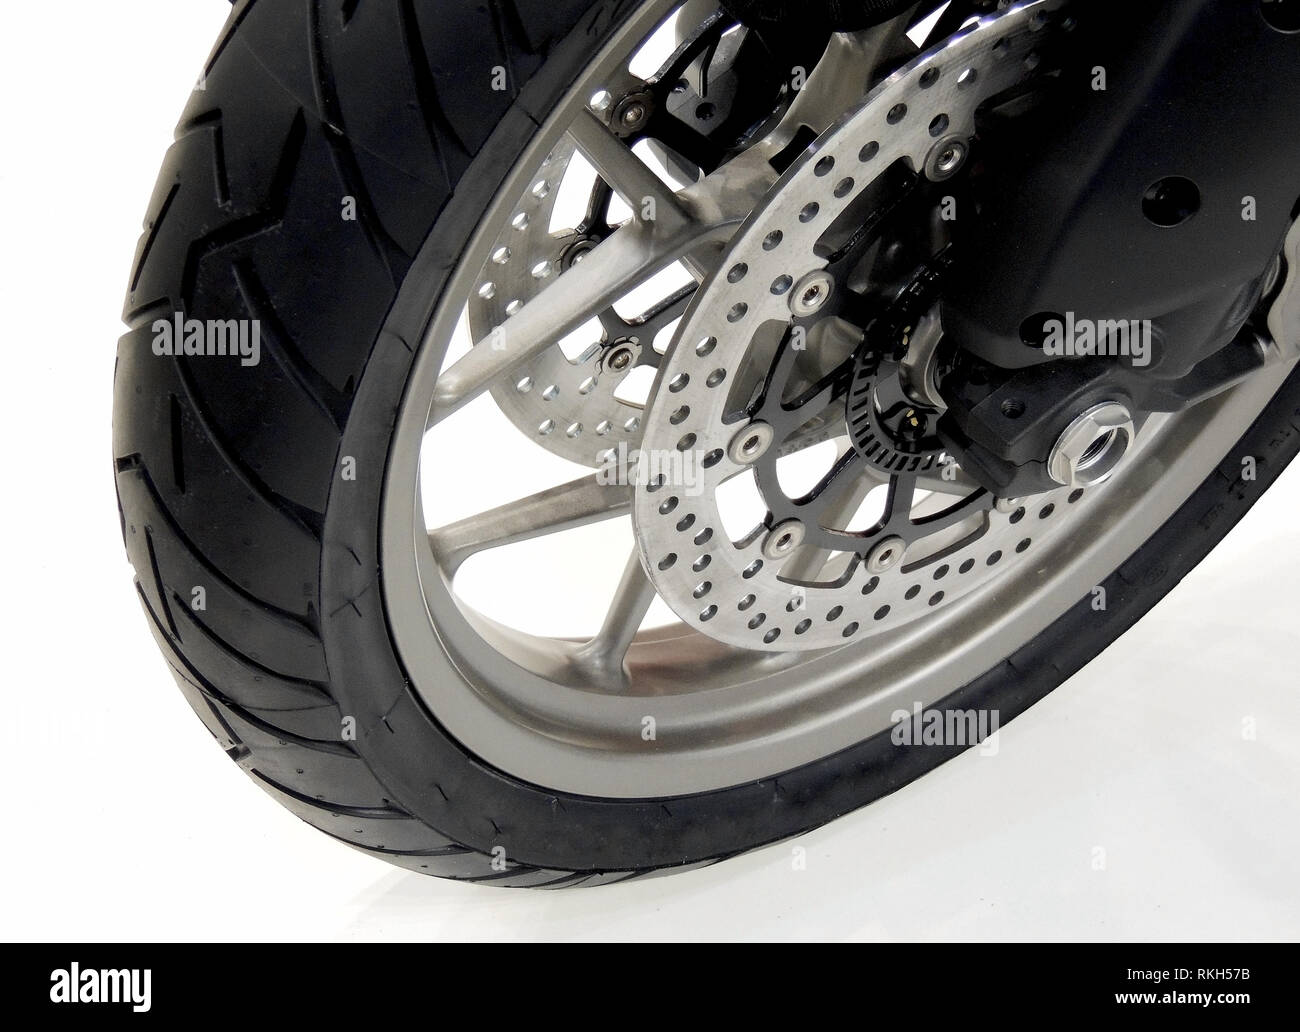 Bremsscheiben und Bremssättel auf dem Vorderrad des Sports Motorrad Foto Stockfoto